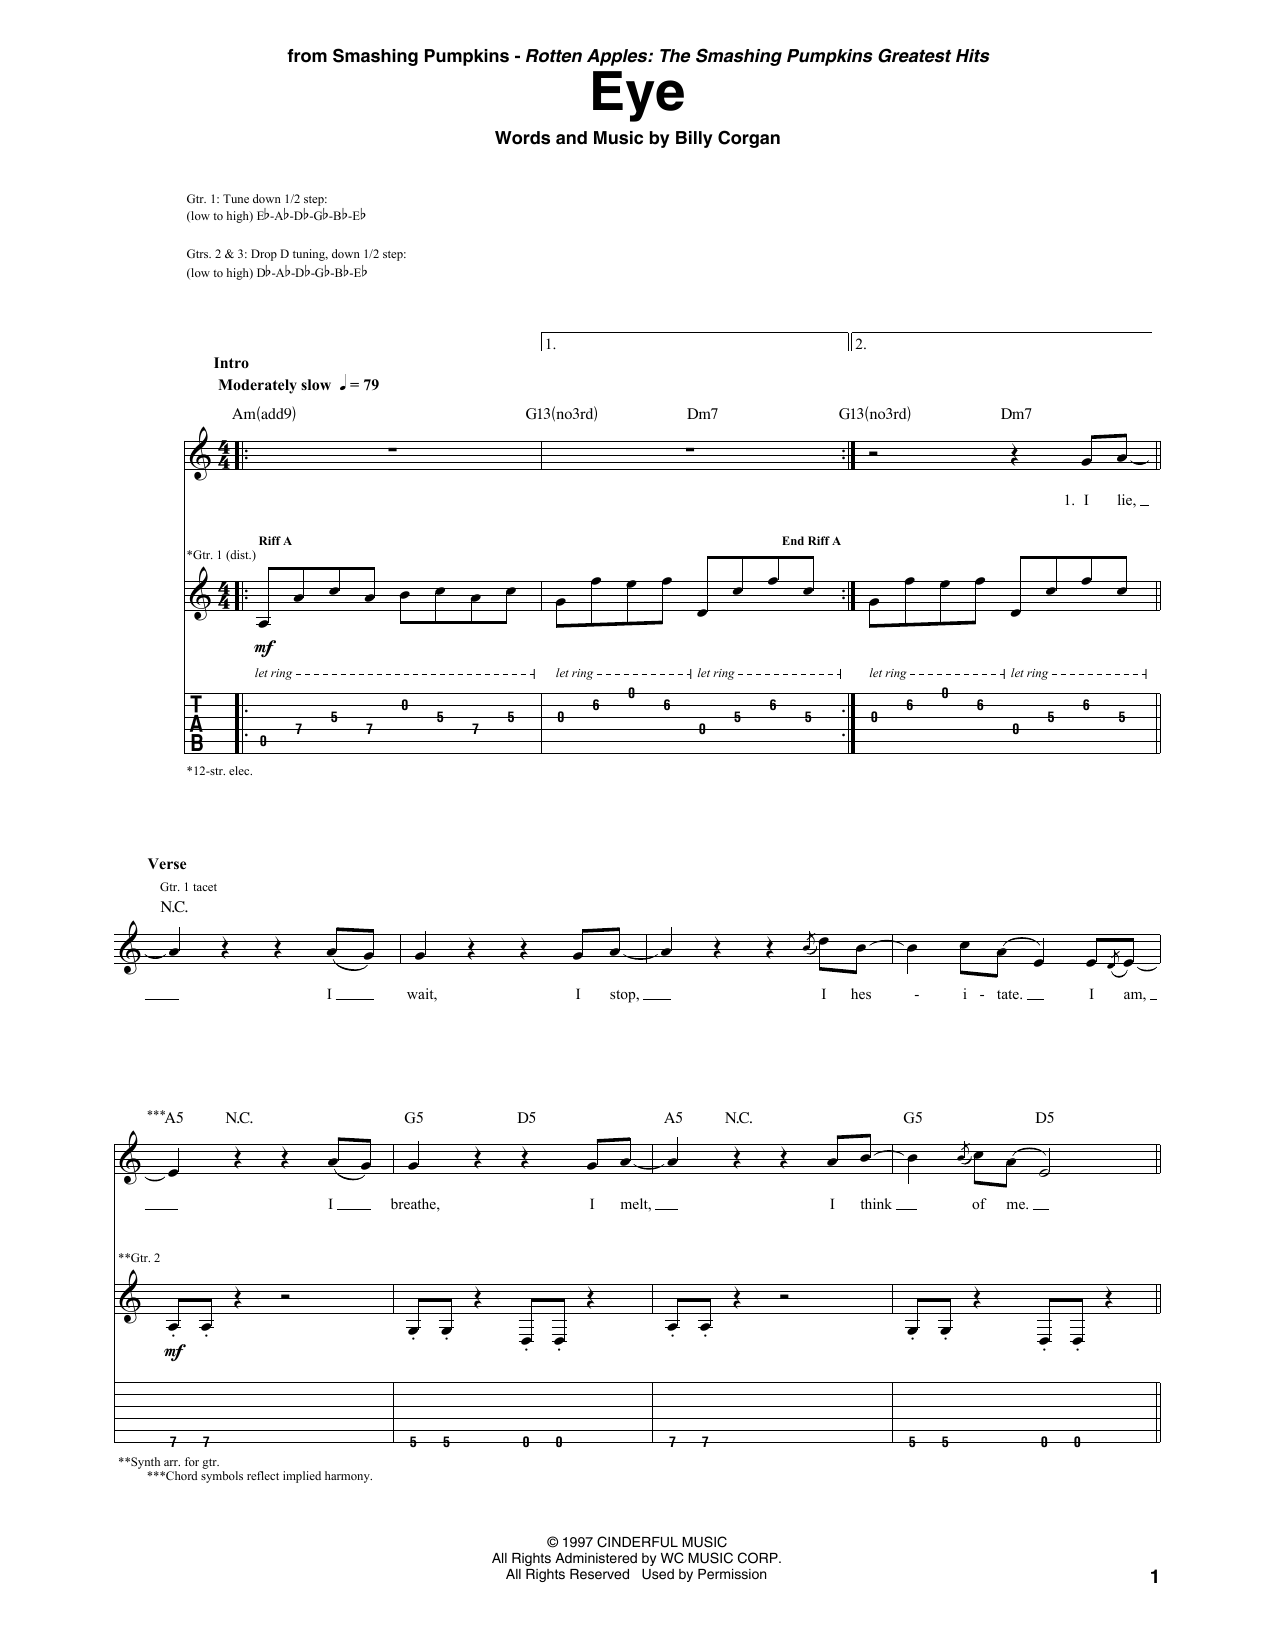 The Smashing Pumpkins Eye Sheet Music Notes & Chords for Guitar Tab - Download or Print PDF